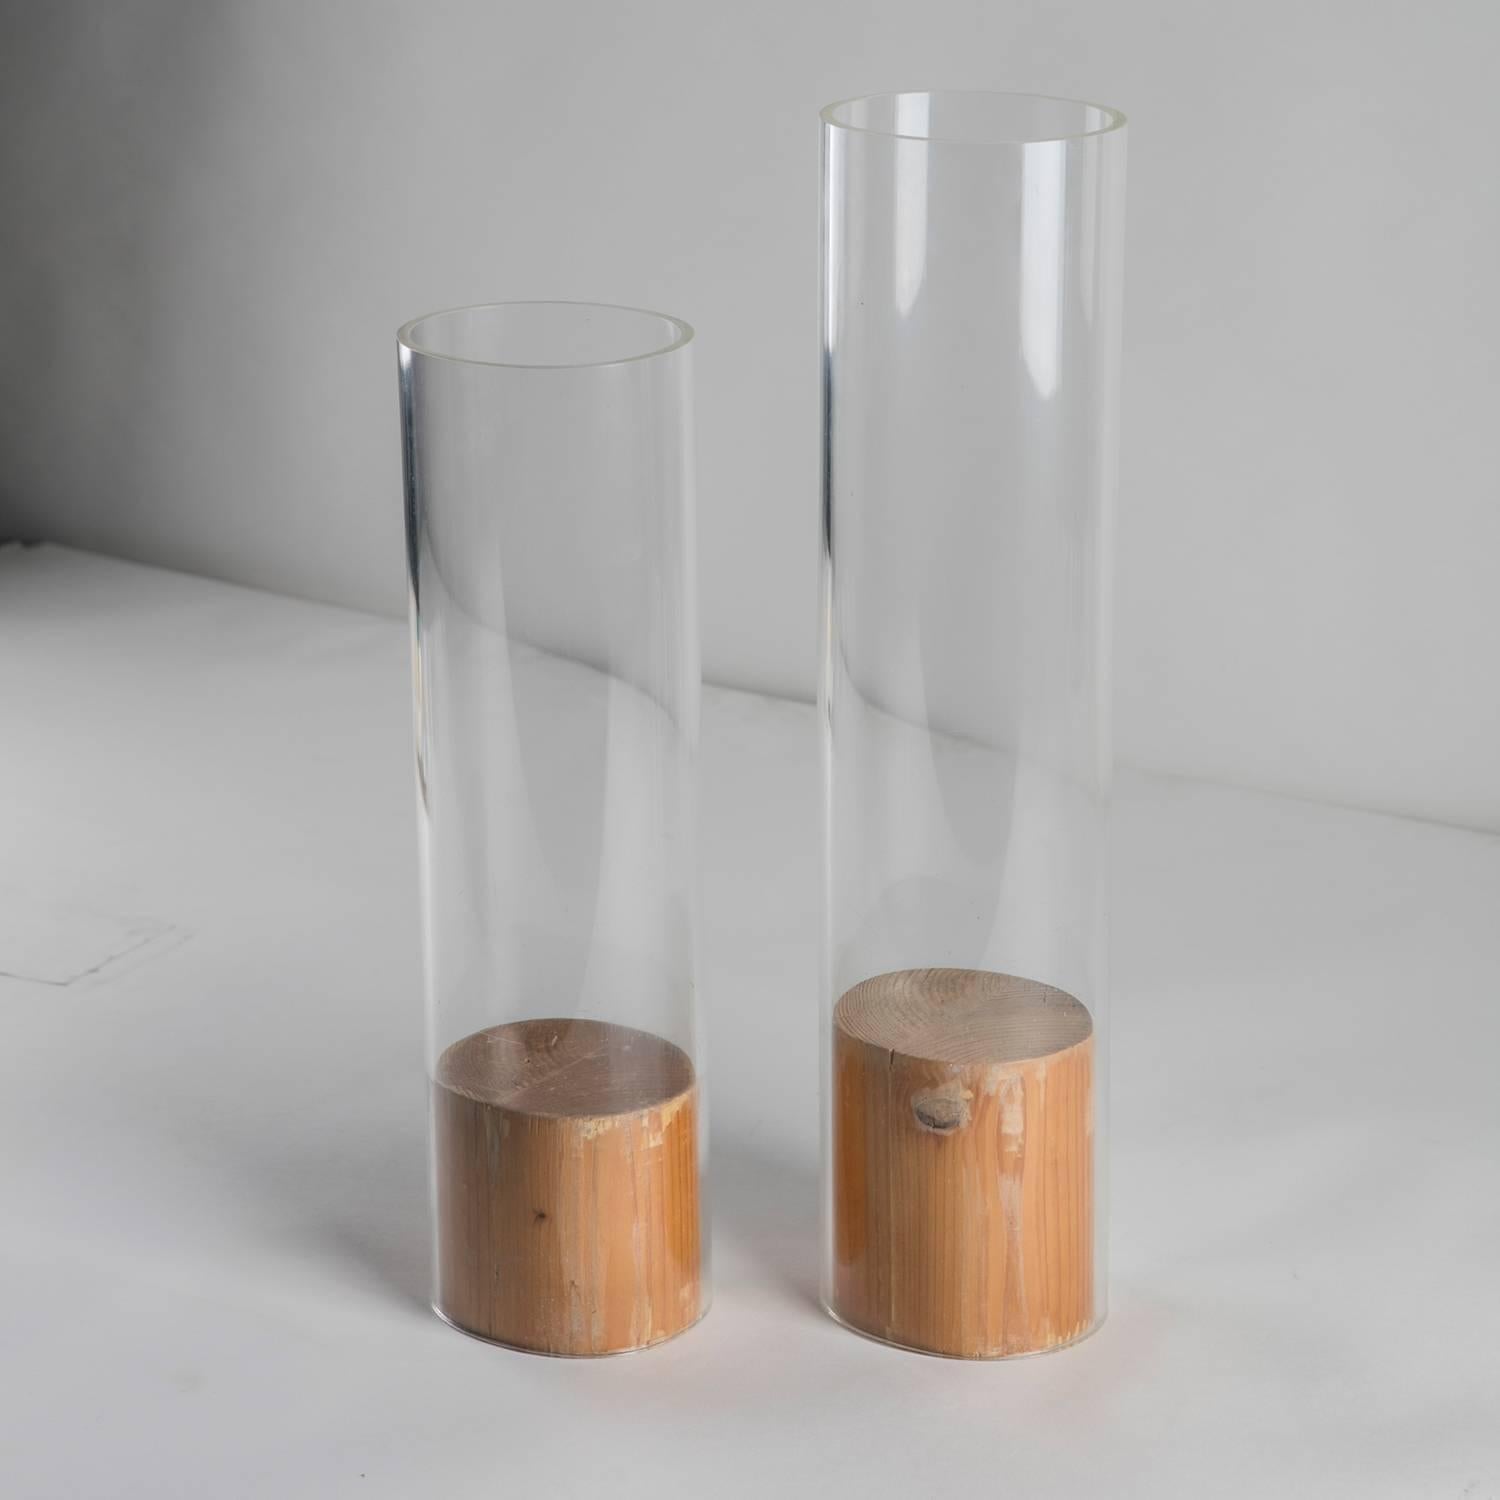 Bemerkenswerter Satz von zwei Vasen von Carla Venosta.
Diese Prototypen sind aus einem massiven Holzblock und einer Plexiglasröhre zusammengesetzt.
Die Größe bezieht sich auf das größte Modell.
     